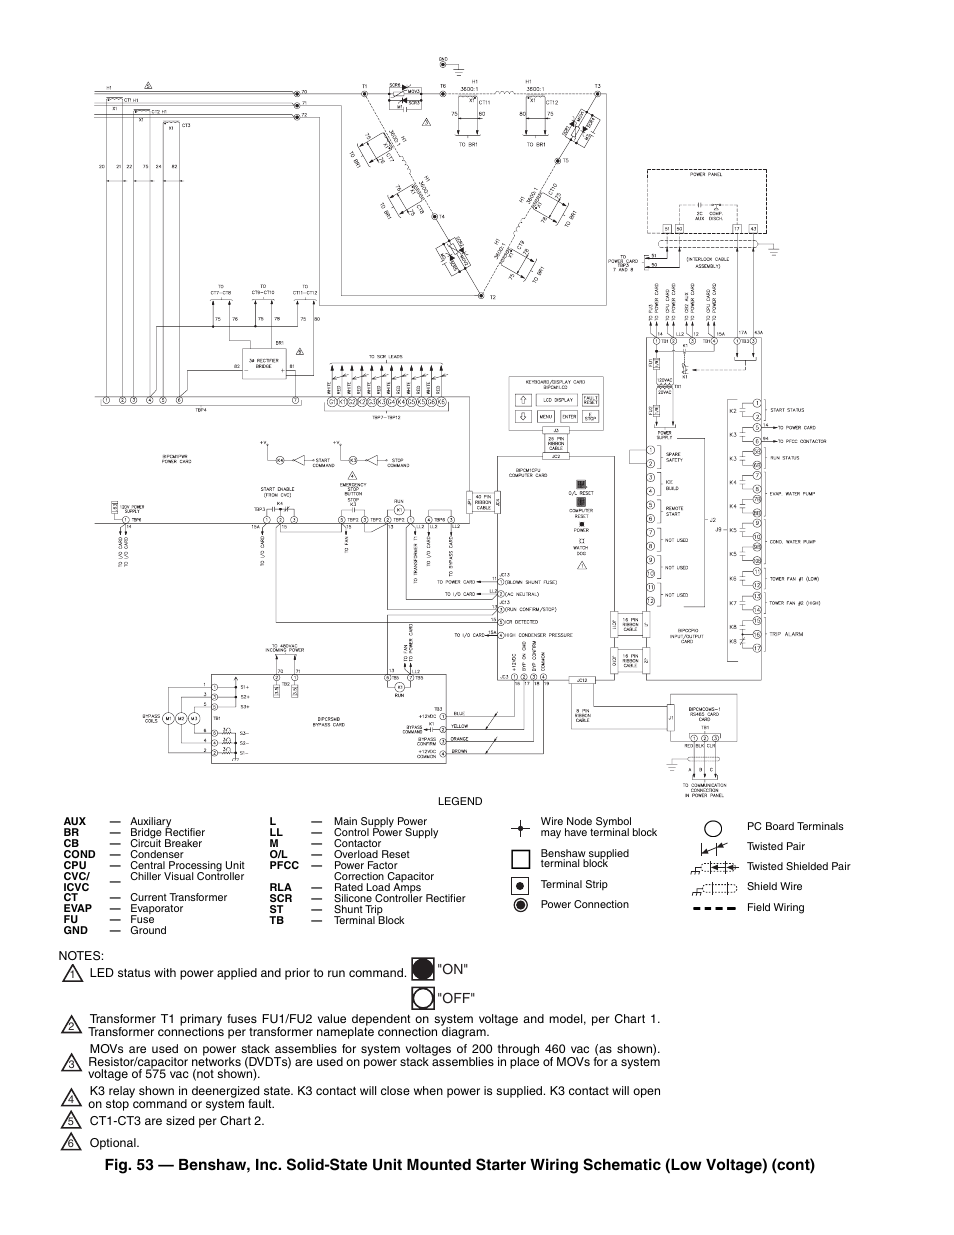 Hx Chiller 300 Wiring Diagram